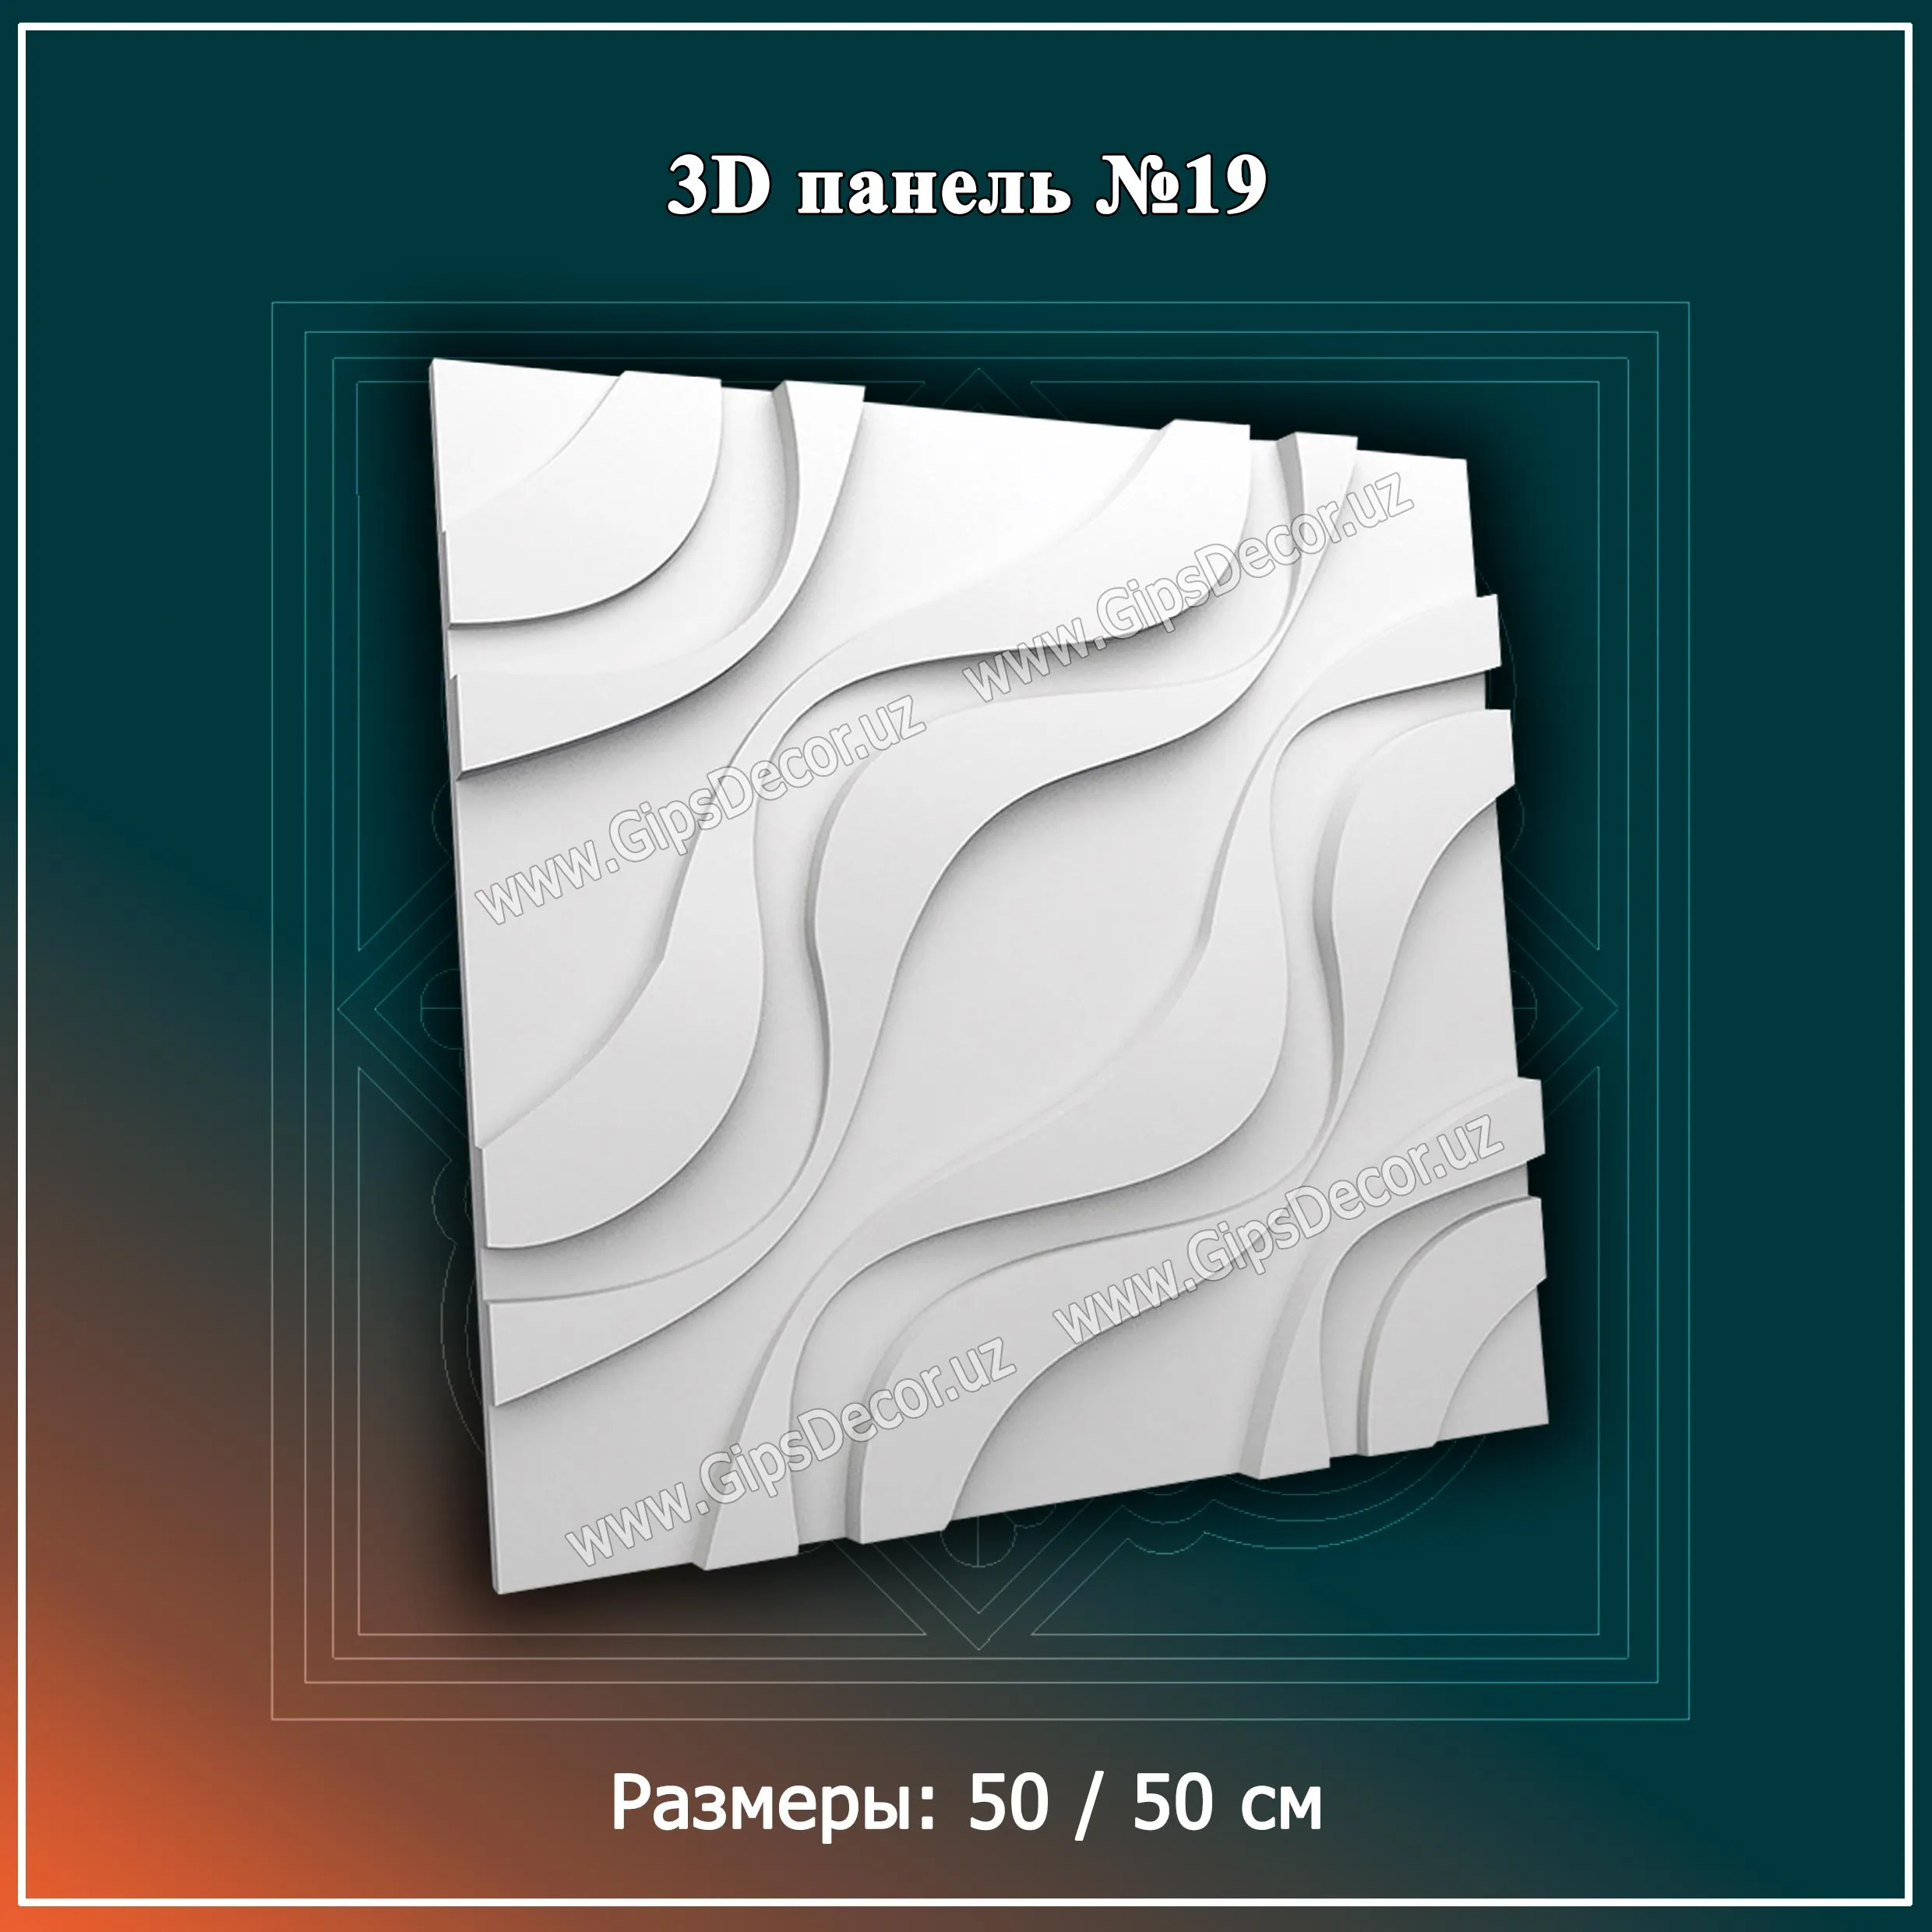 3D Панель №19 Размеры: 50 / 50 см#1